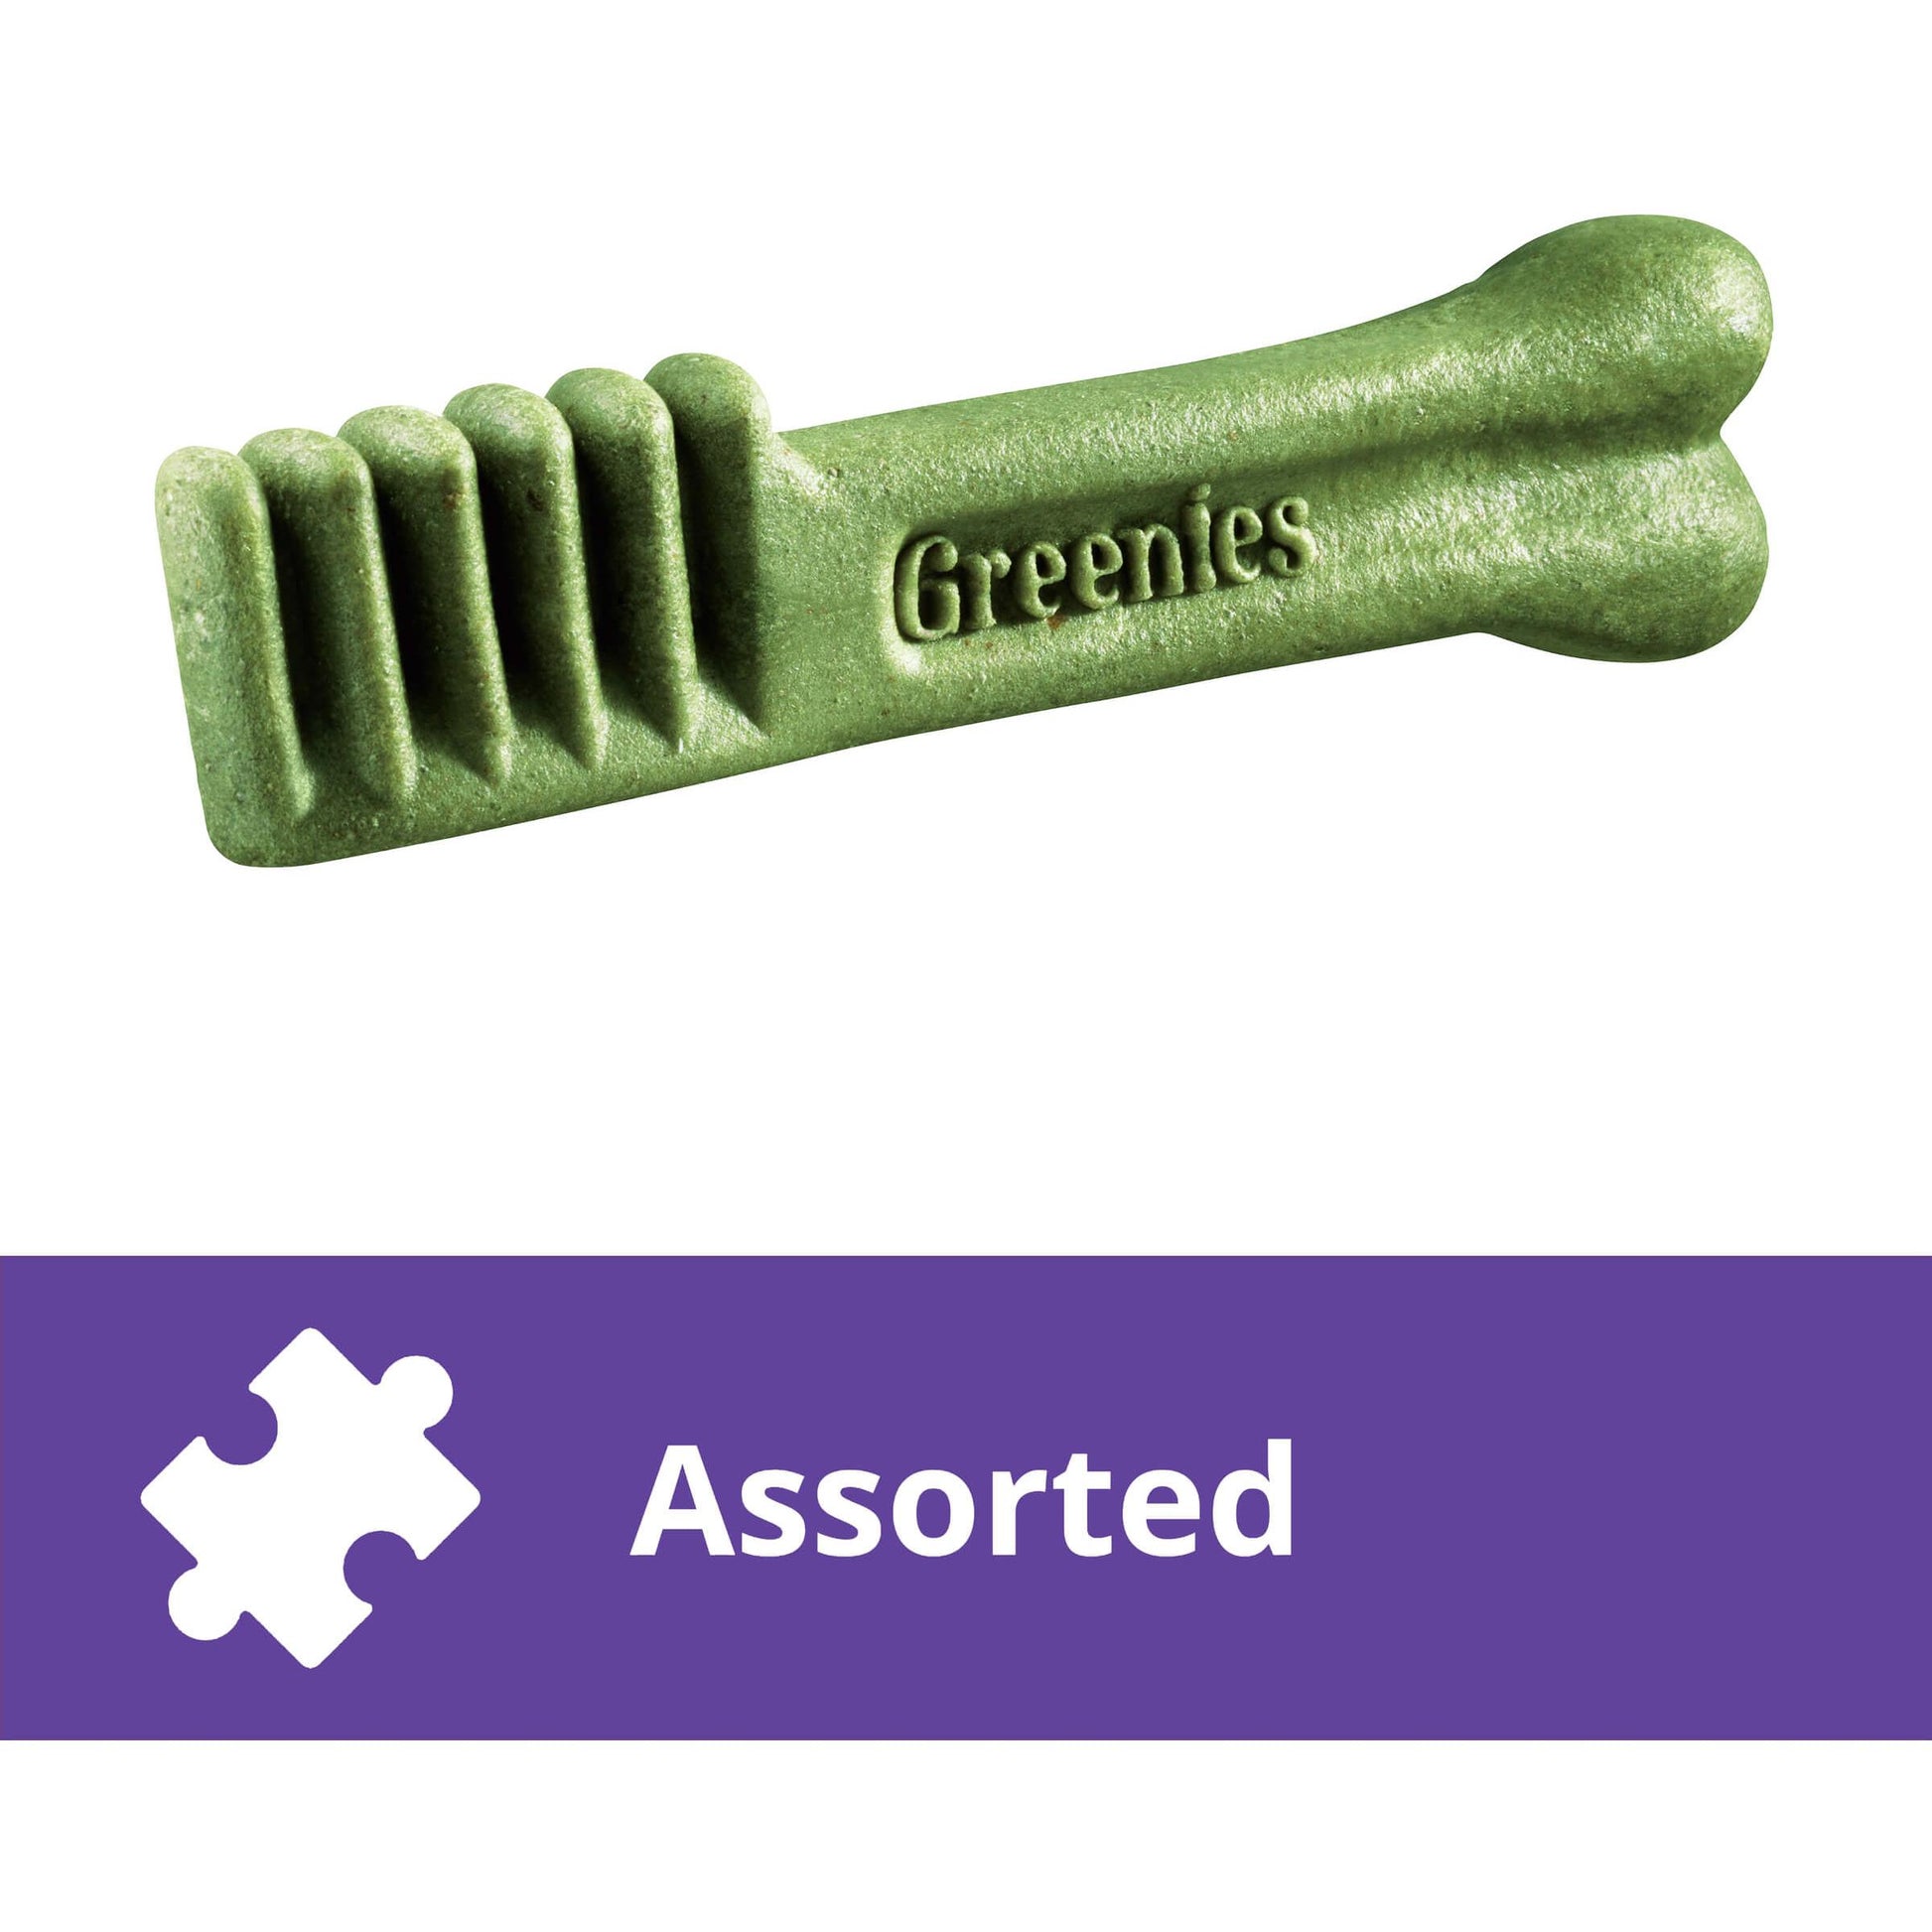 Greenies Original Large Dental Dog Treats 1kg (100000005421) [default_color]